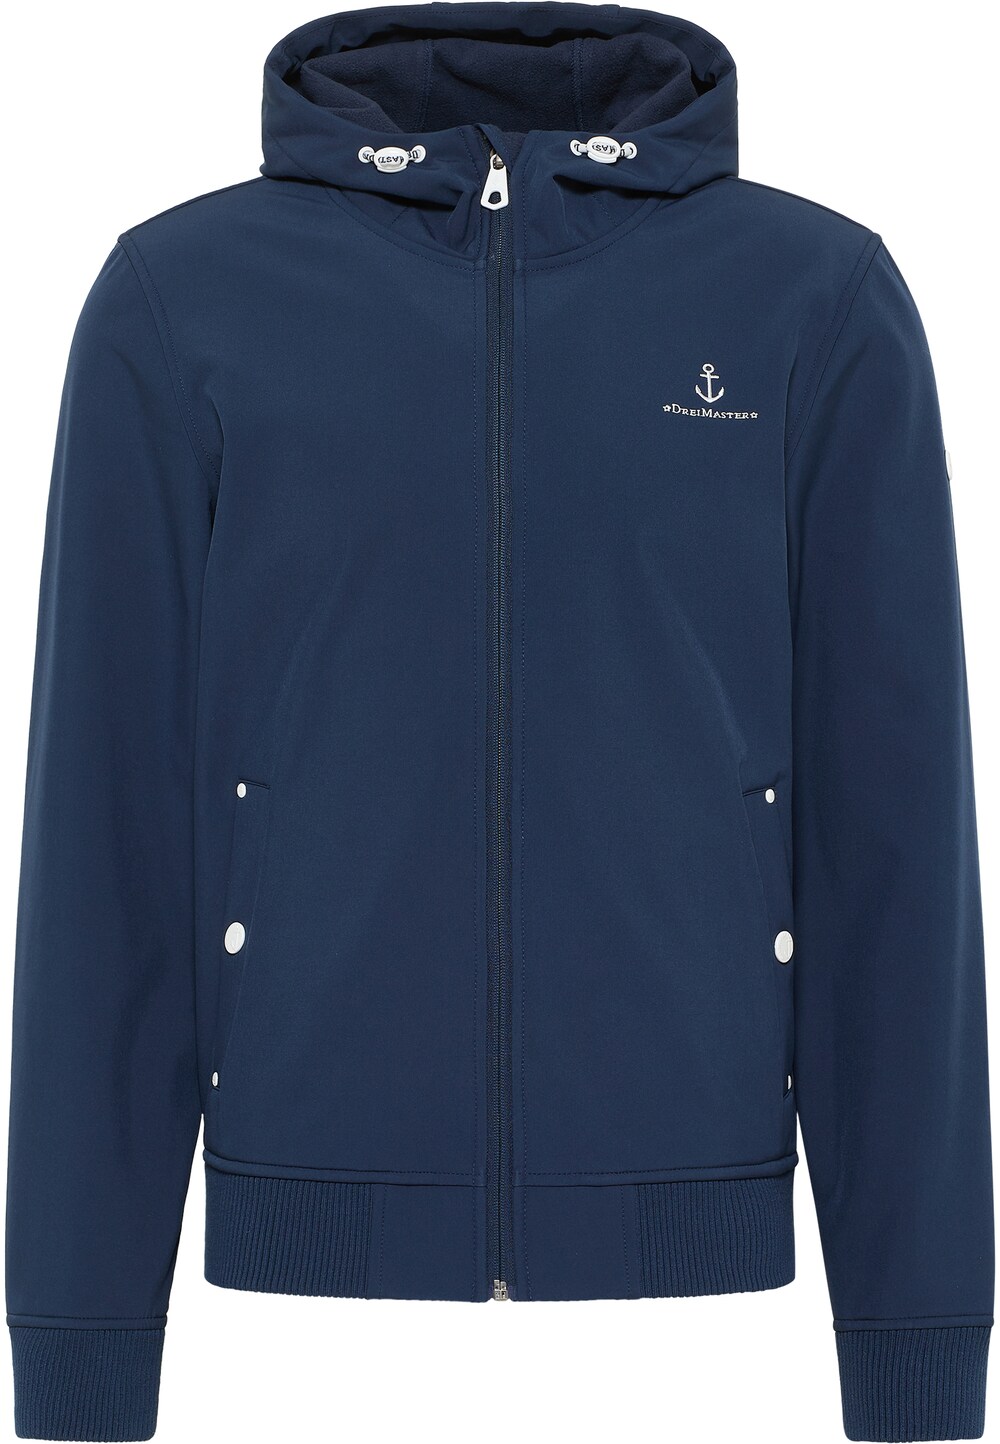 Межсезонная куртка Dreimaster Maritim, морской синий межсезонная куртка dreimaster ночной синий